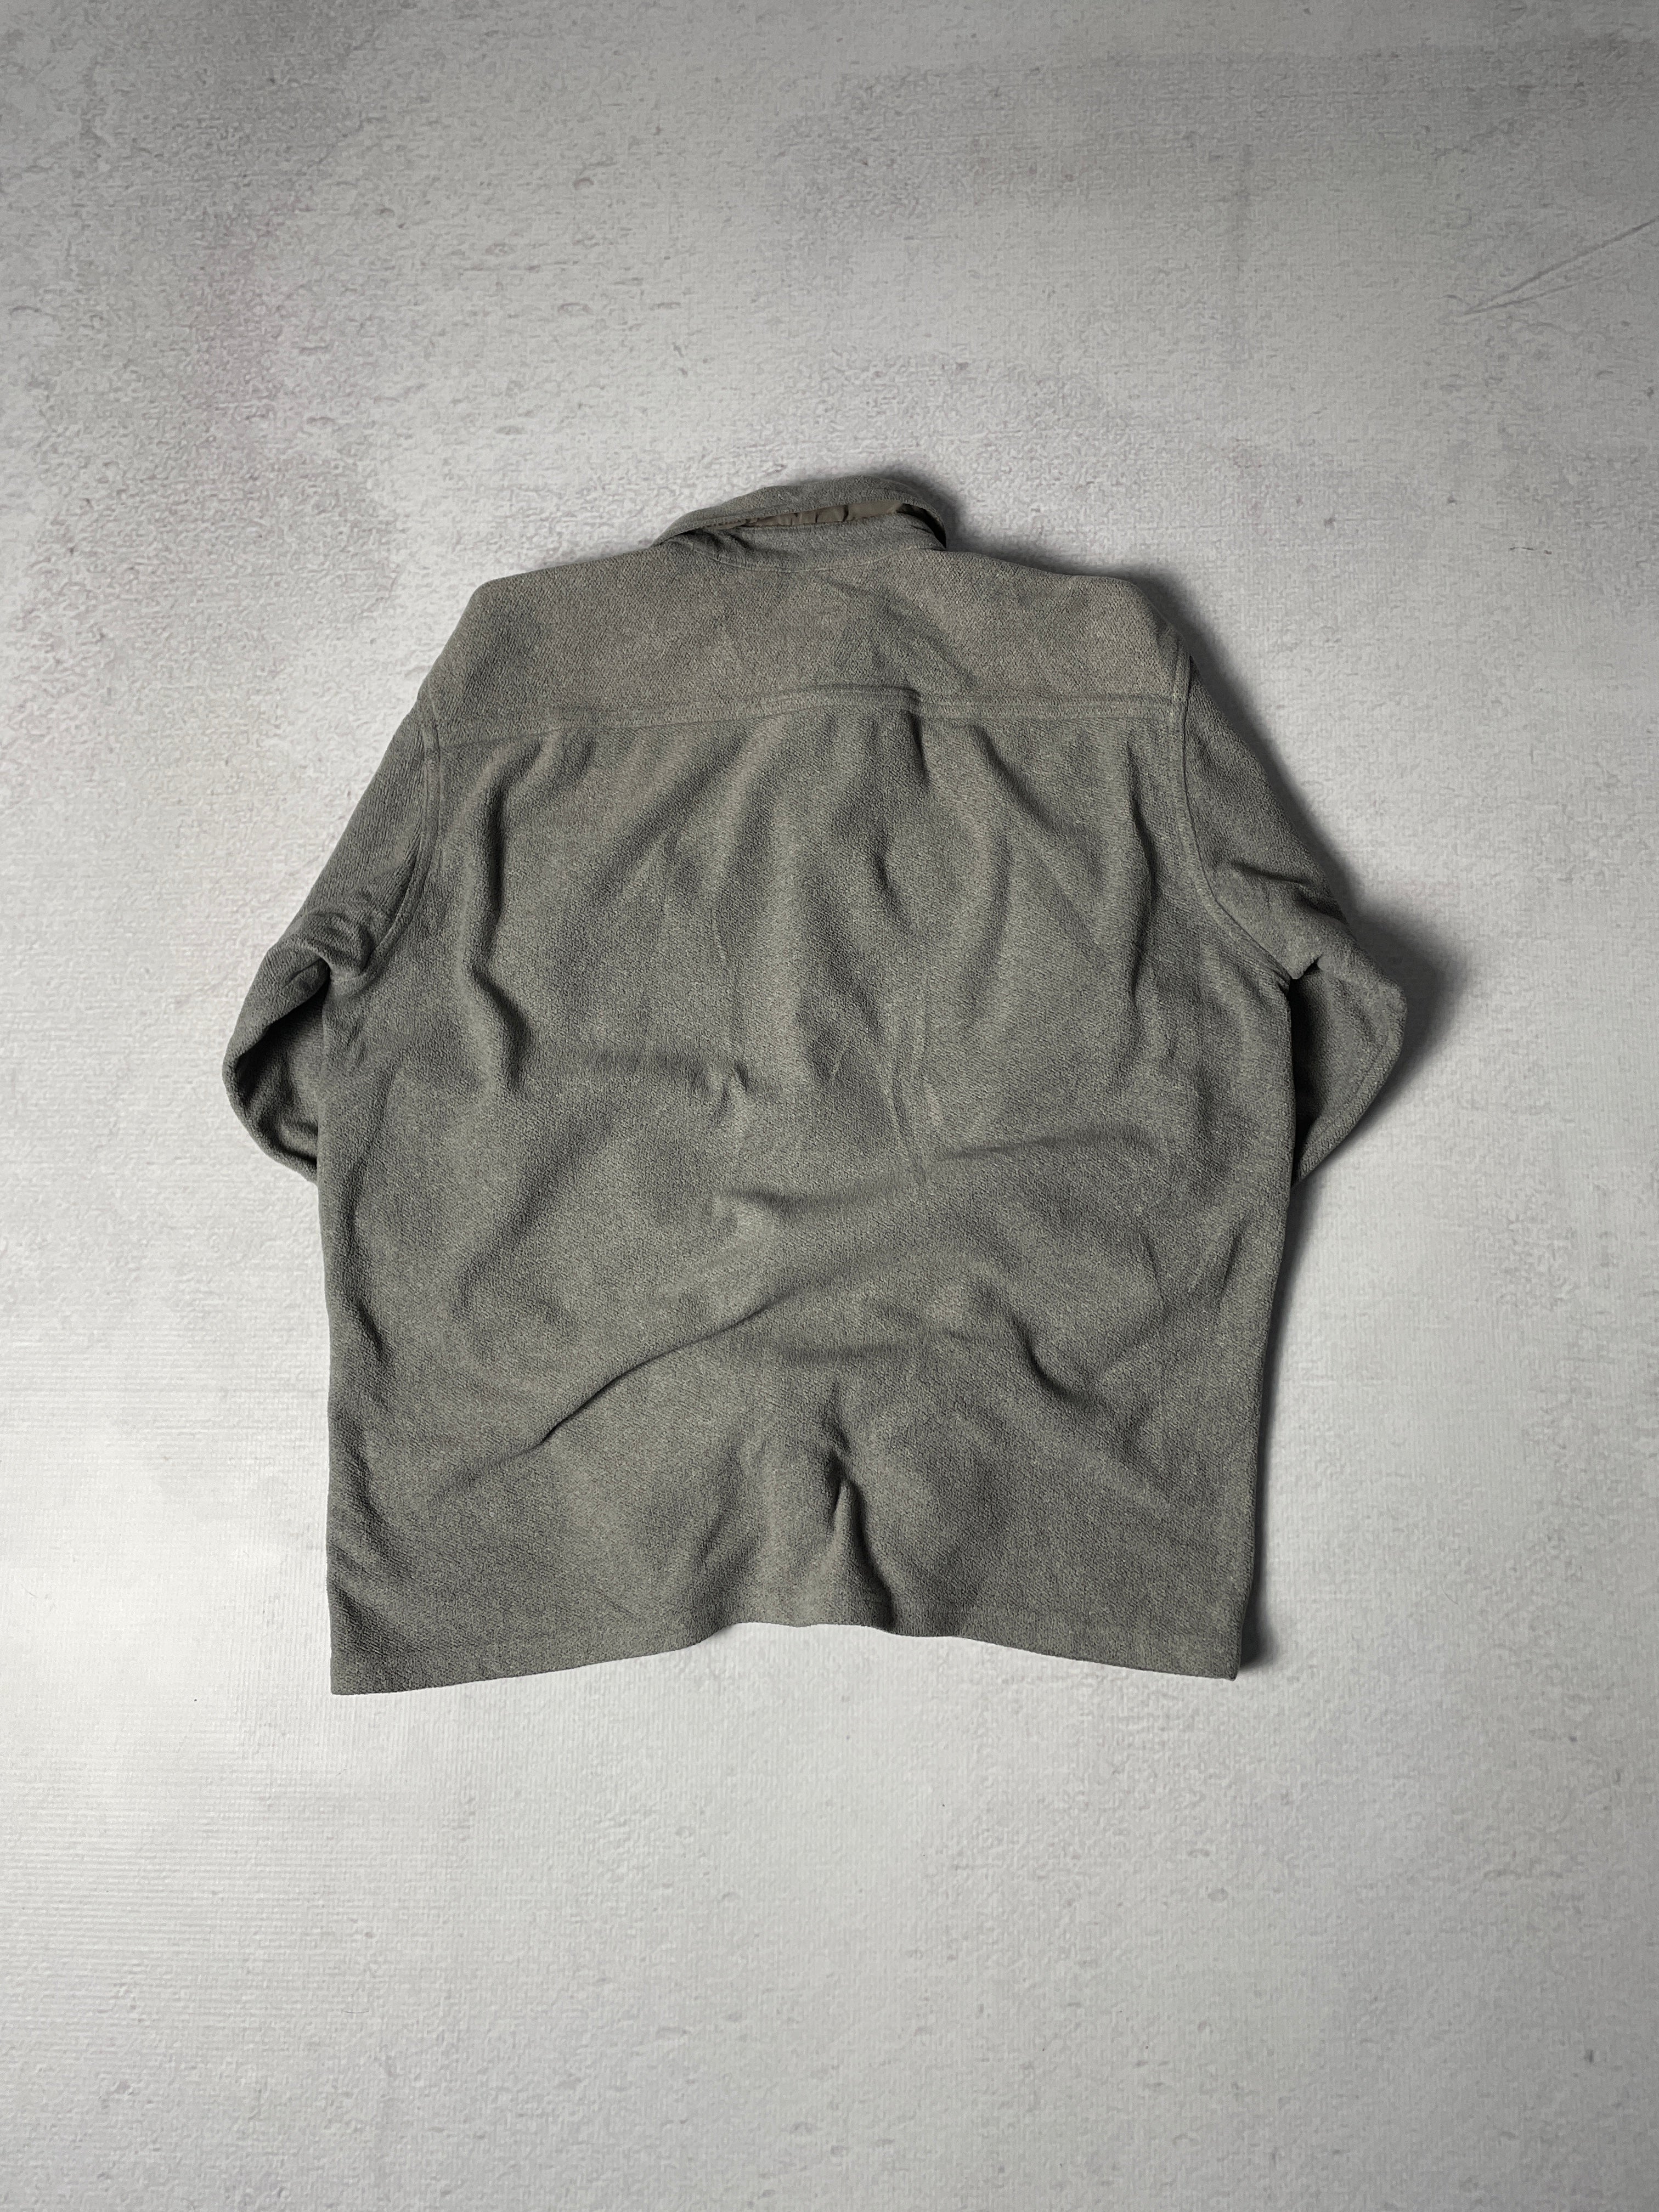 Vintage Patagonia Buttoned Shirt - Men's Medium